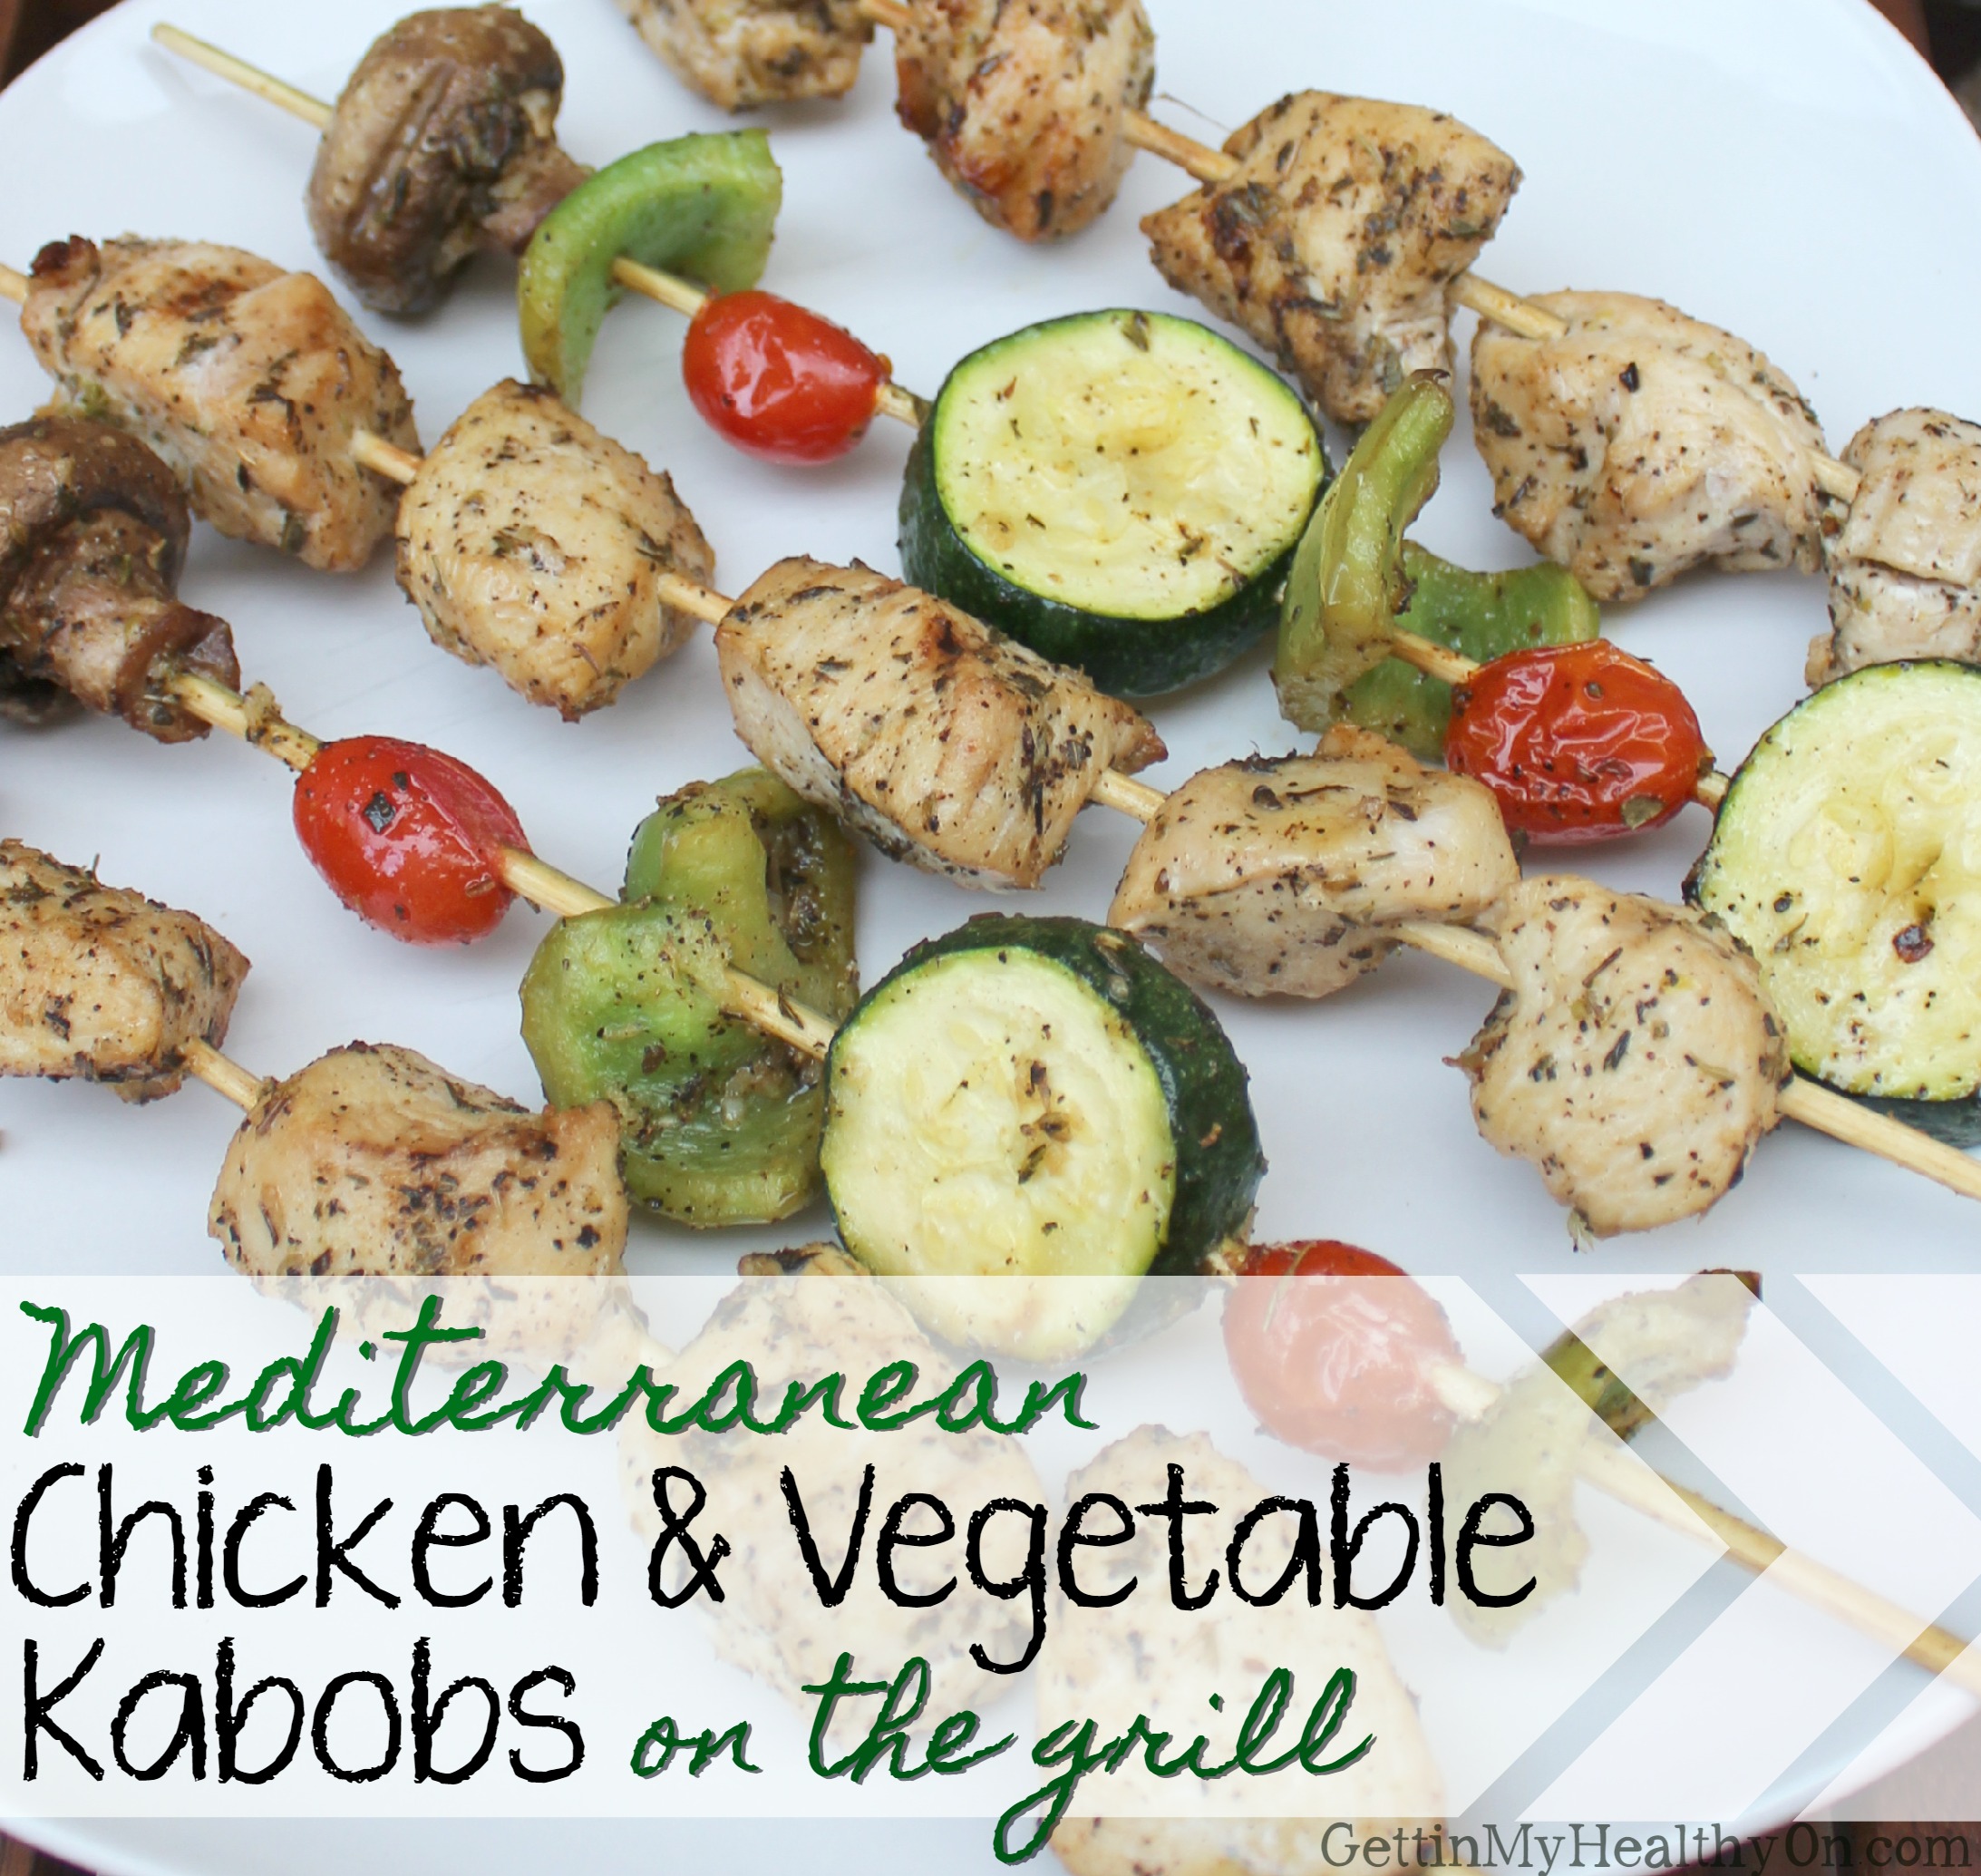 Mediterranean Chicken & Vegetable Kabobs